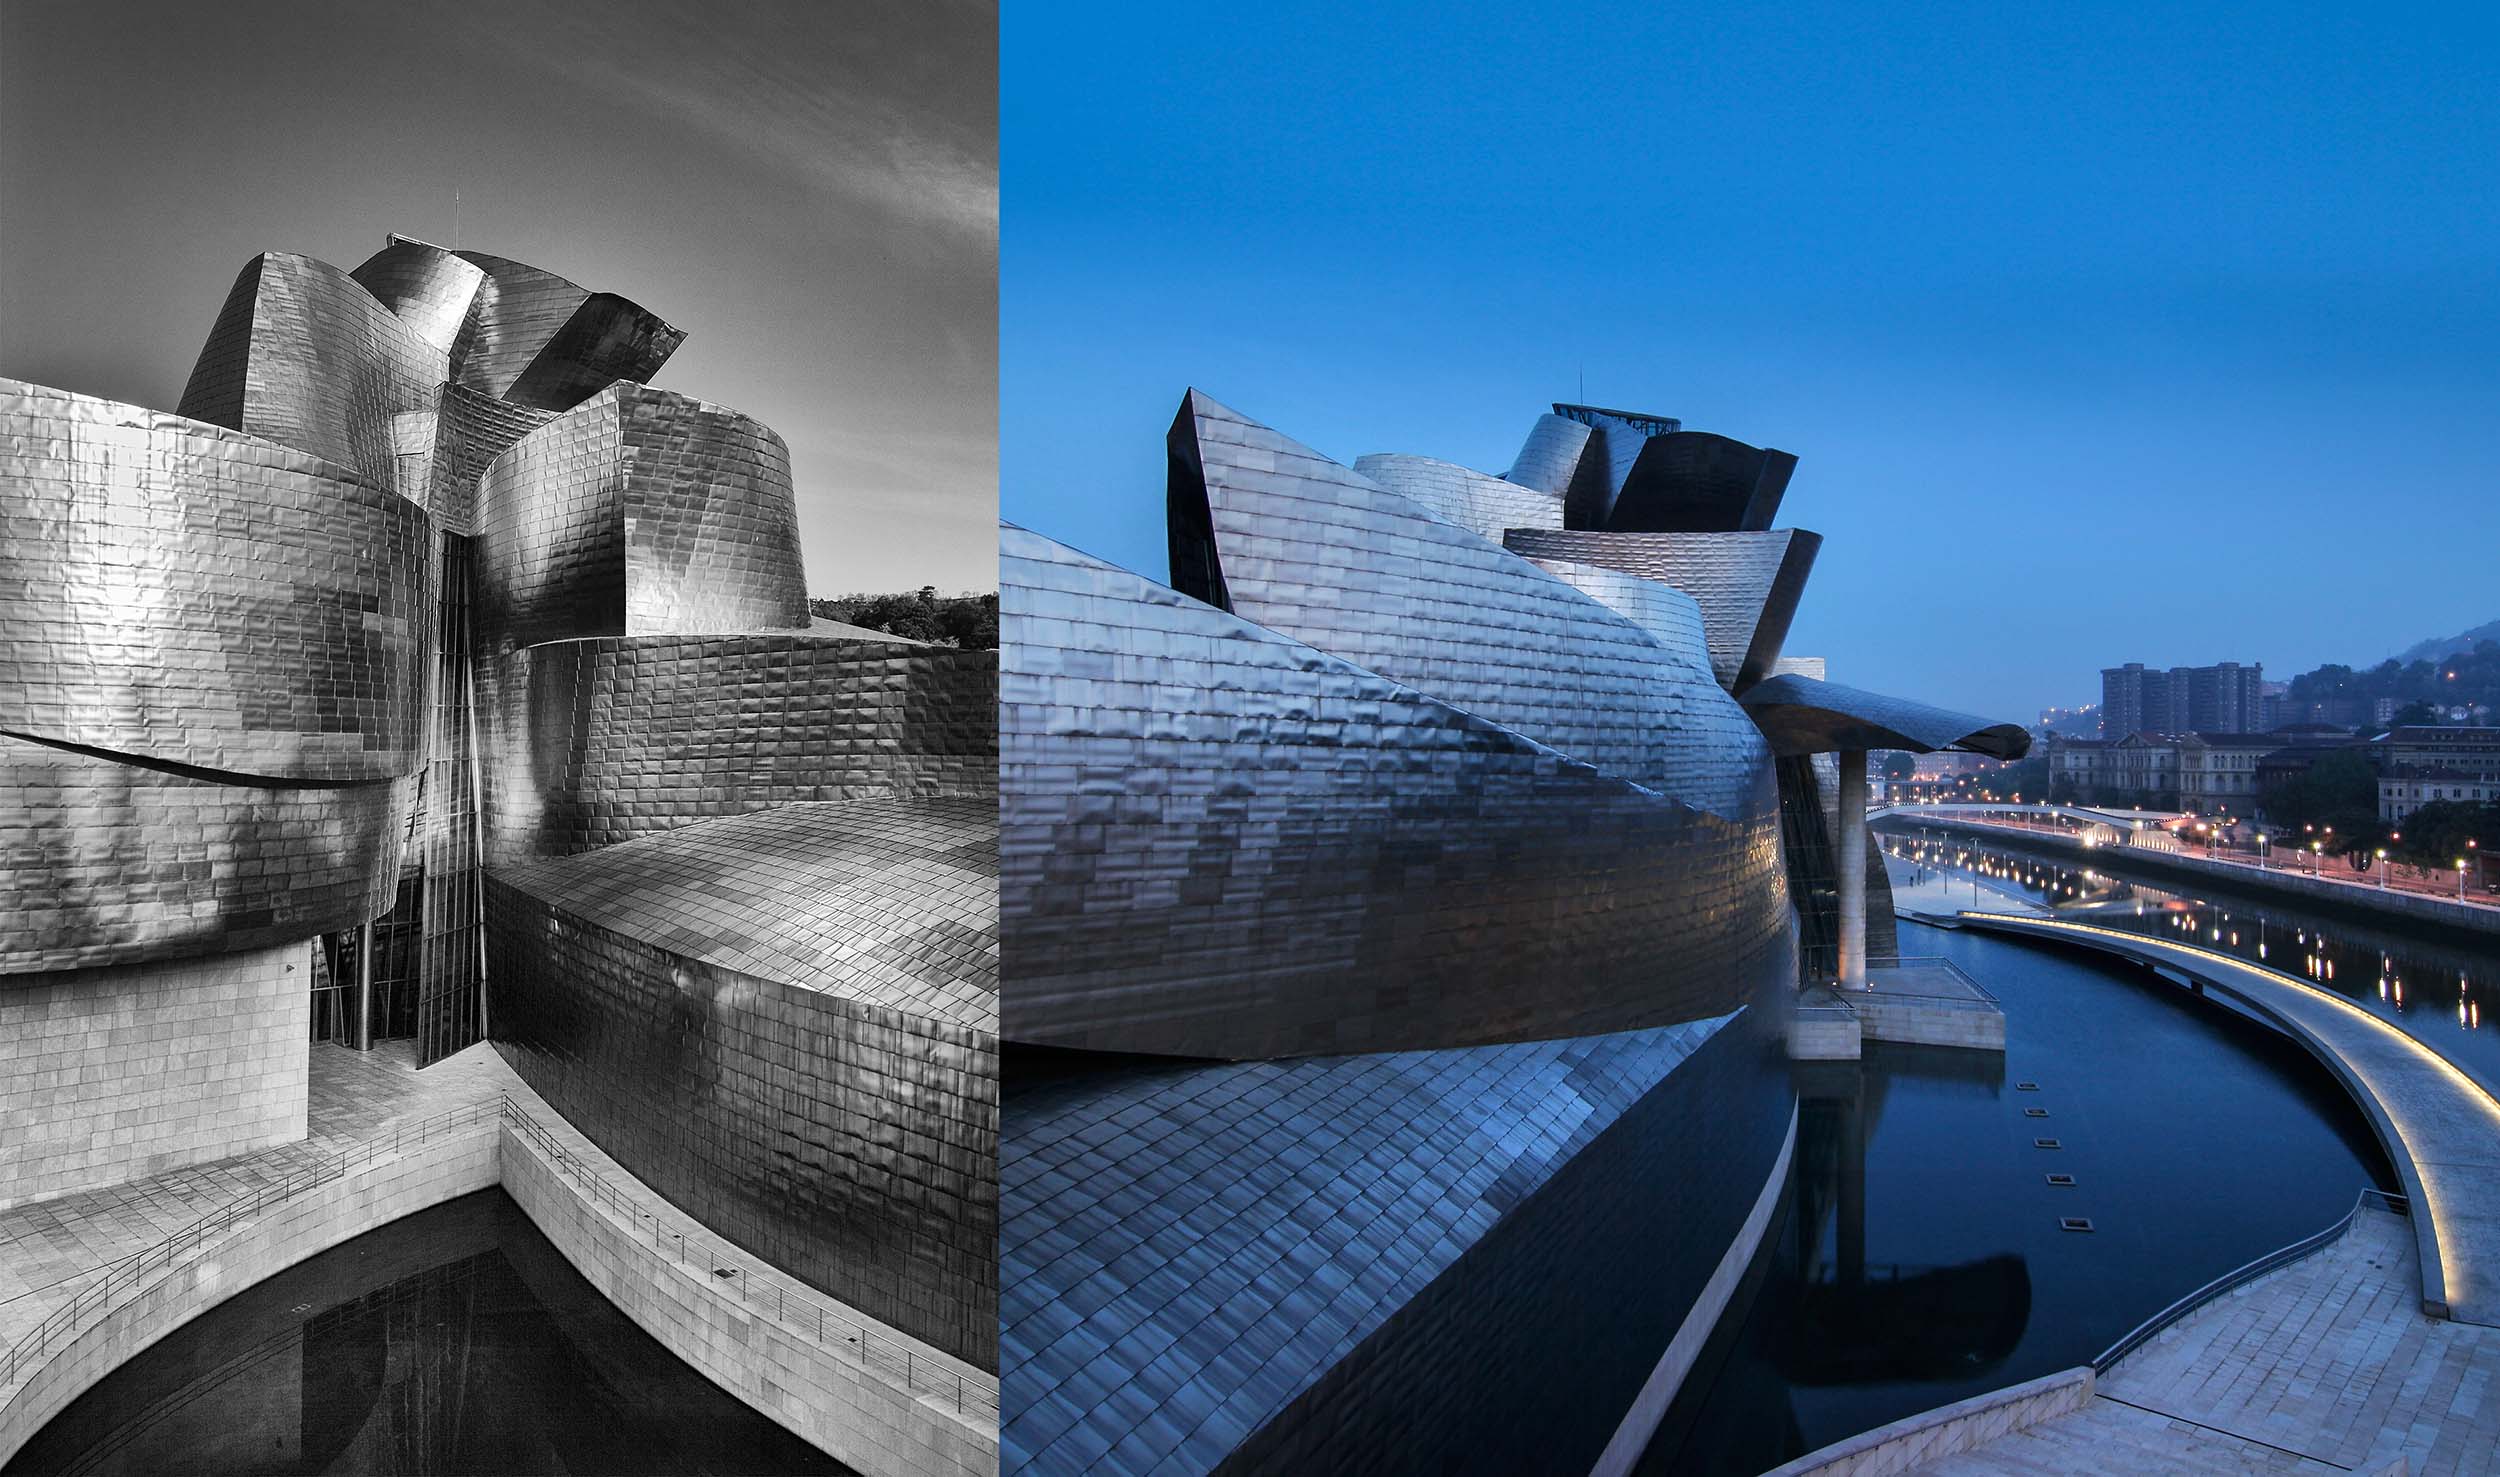 Guggenheim_Bilbao_1896_1836_2500_460K.jpg